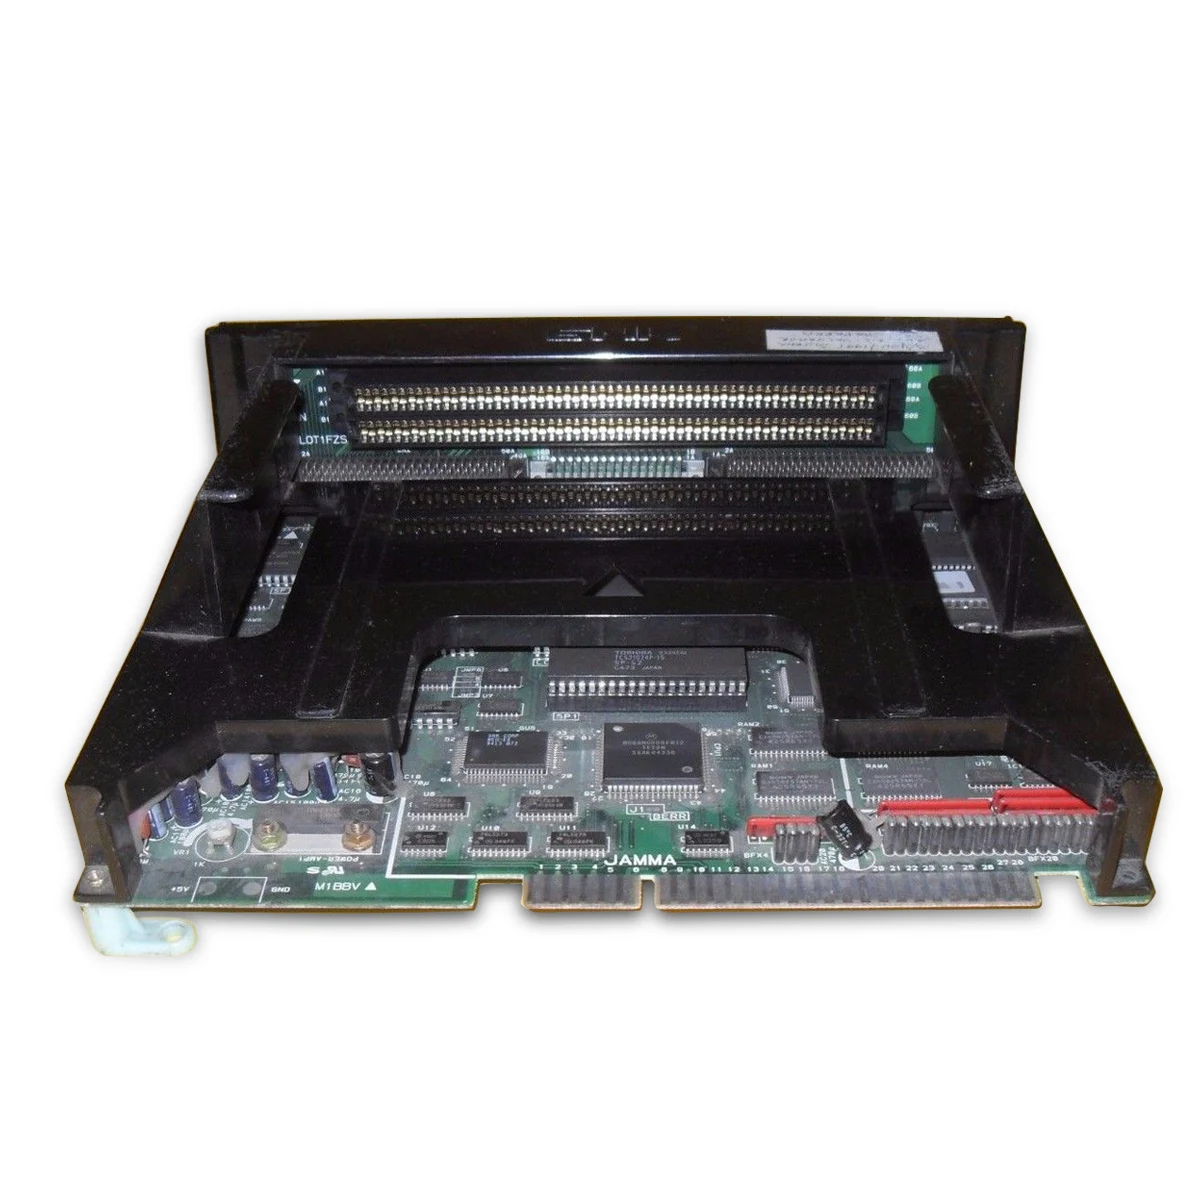 Используется NeoGeo SNK 1-материнская плата со слотом модель MV-1C/MV1B-NeoGeo мульти игры редкий предмет старый в рабочем состоянии ретро-доска база